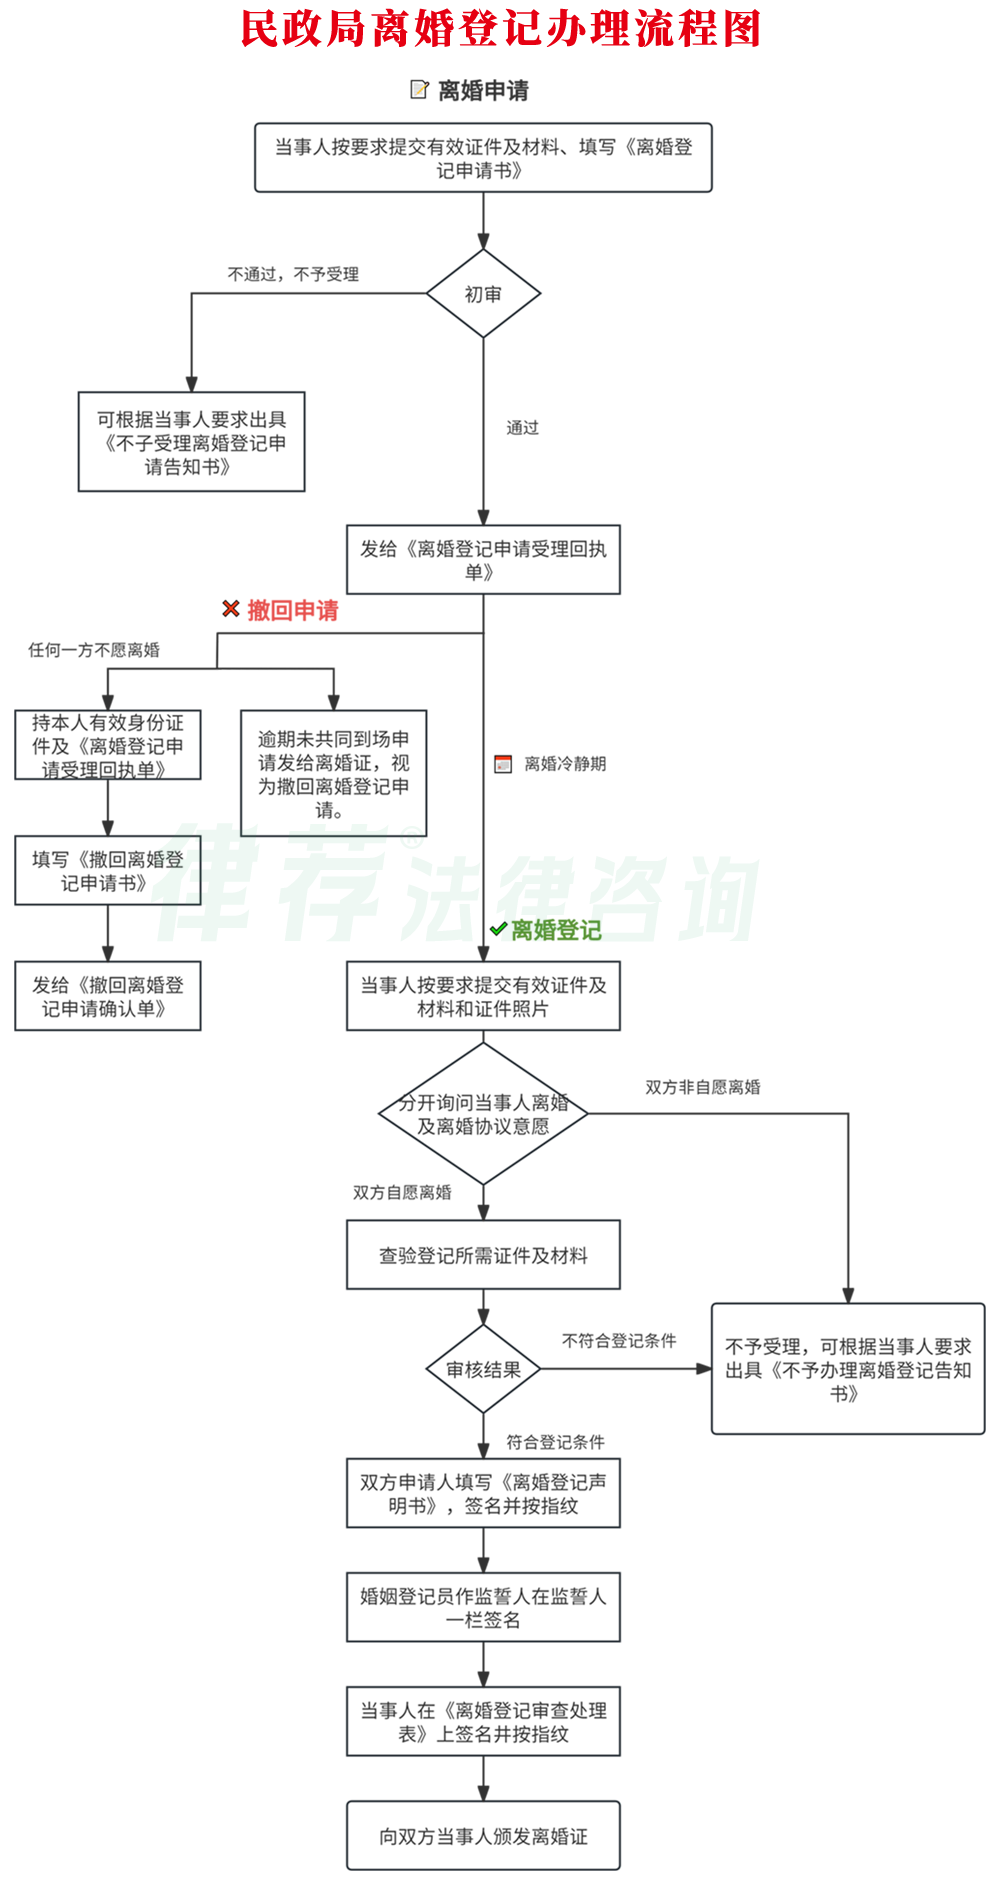 上海奉贤区民政局离婚登记流程